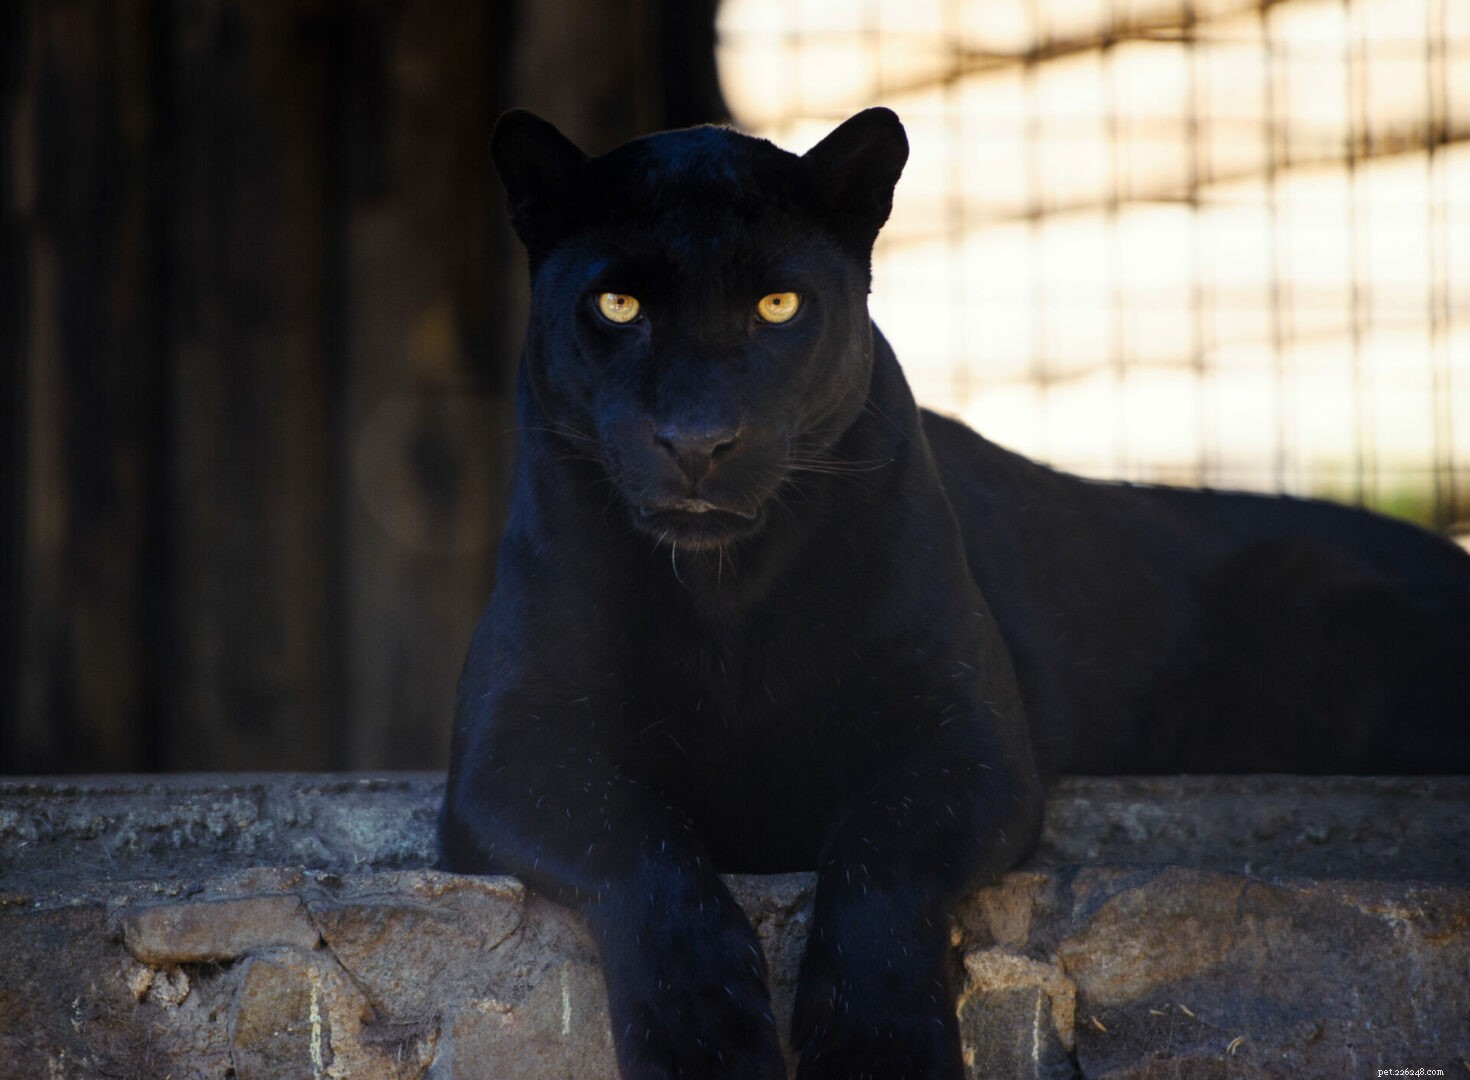 Big Cat 411:Tudo sobre o Pantera Negra